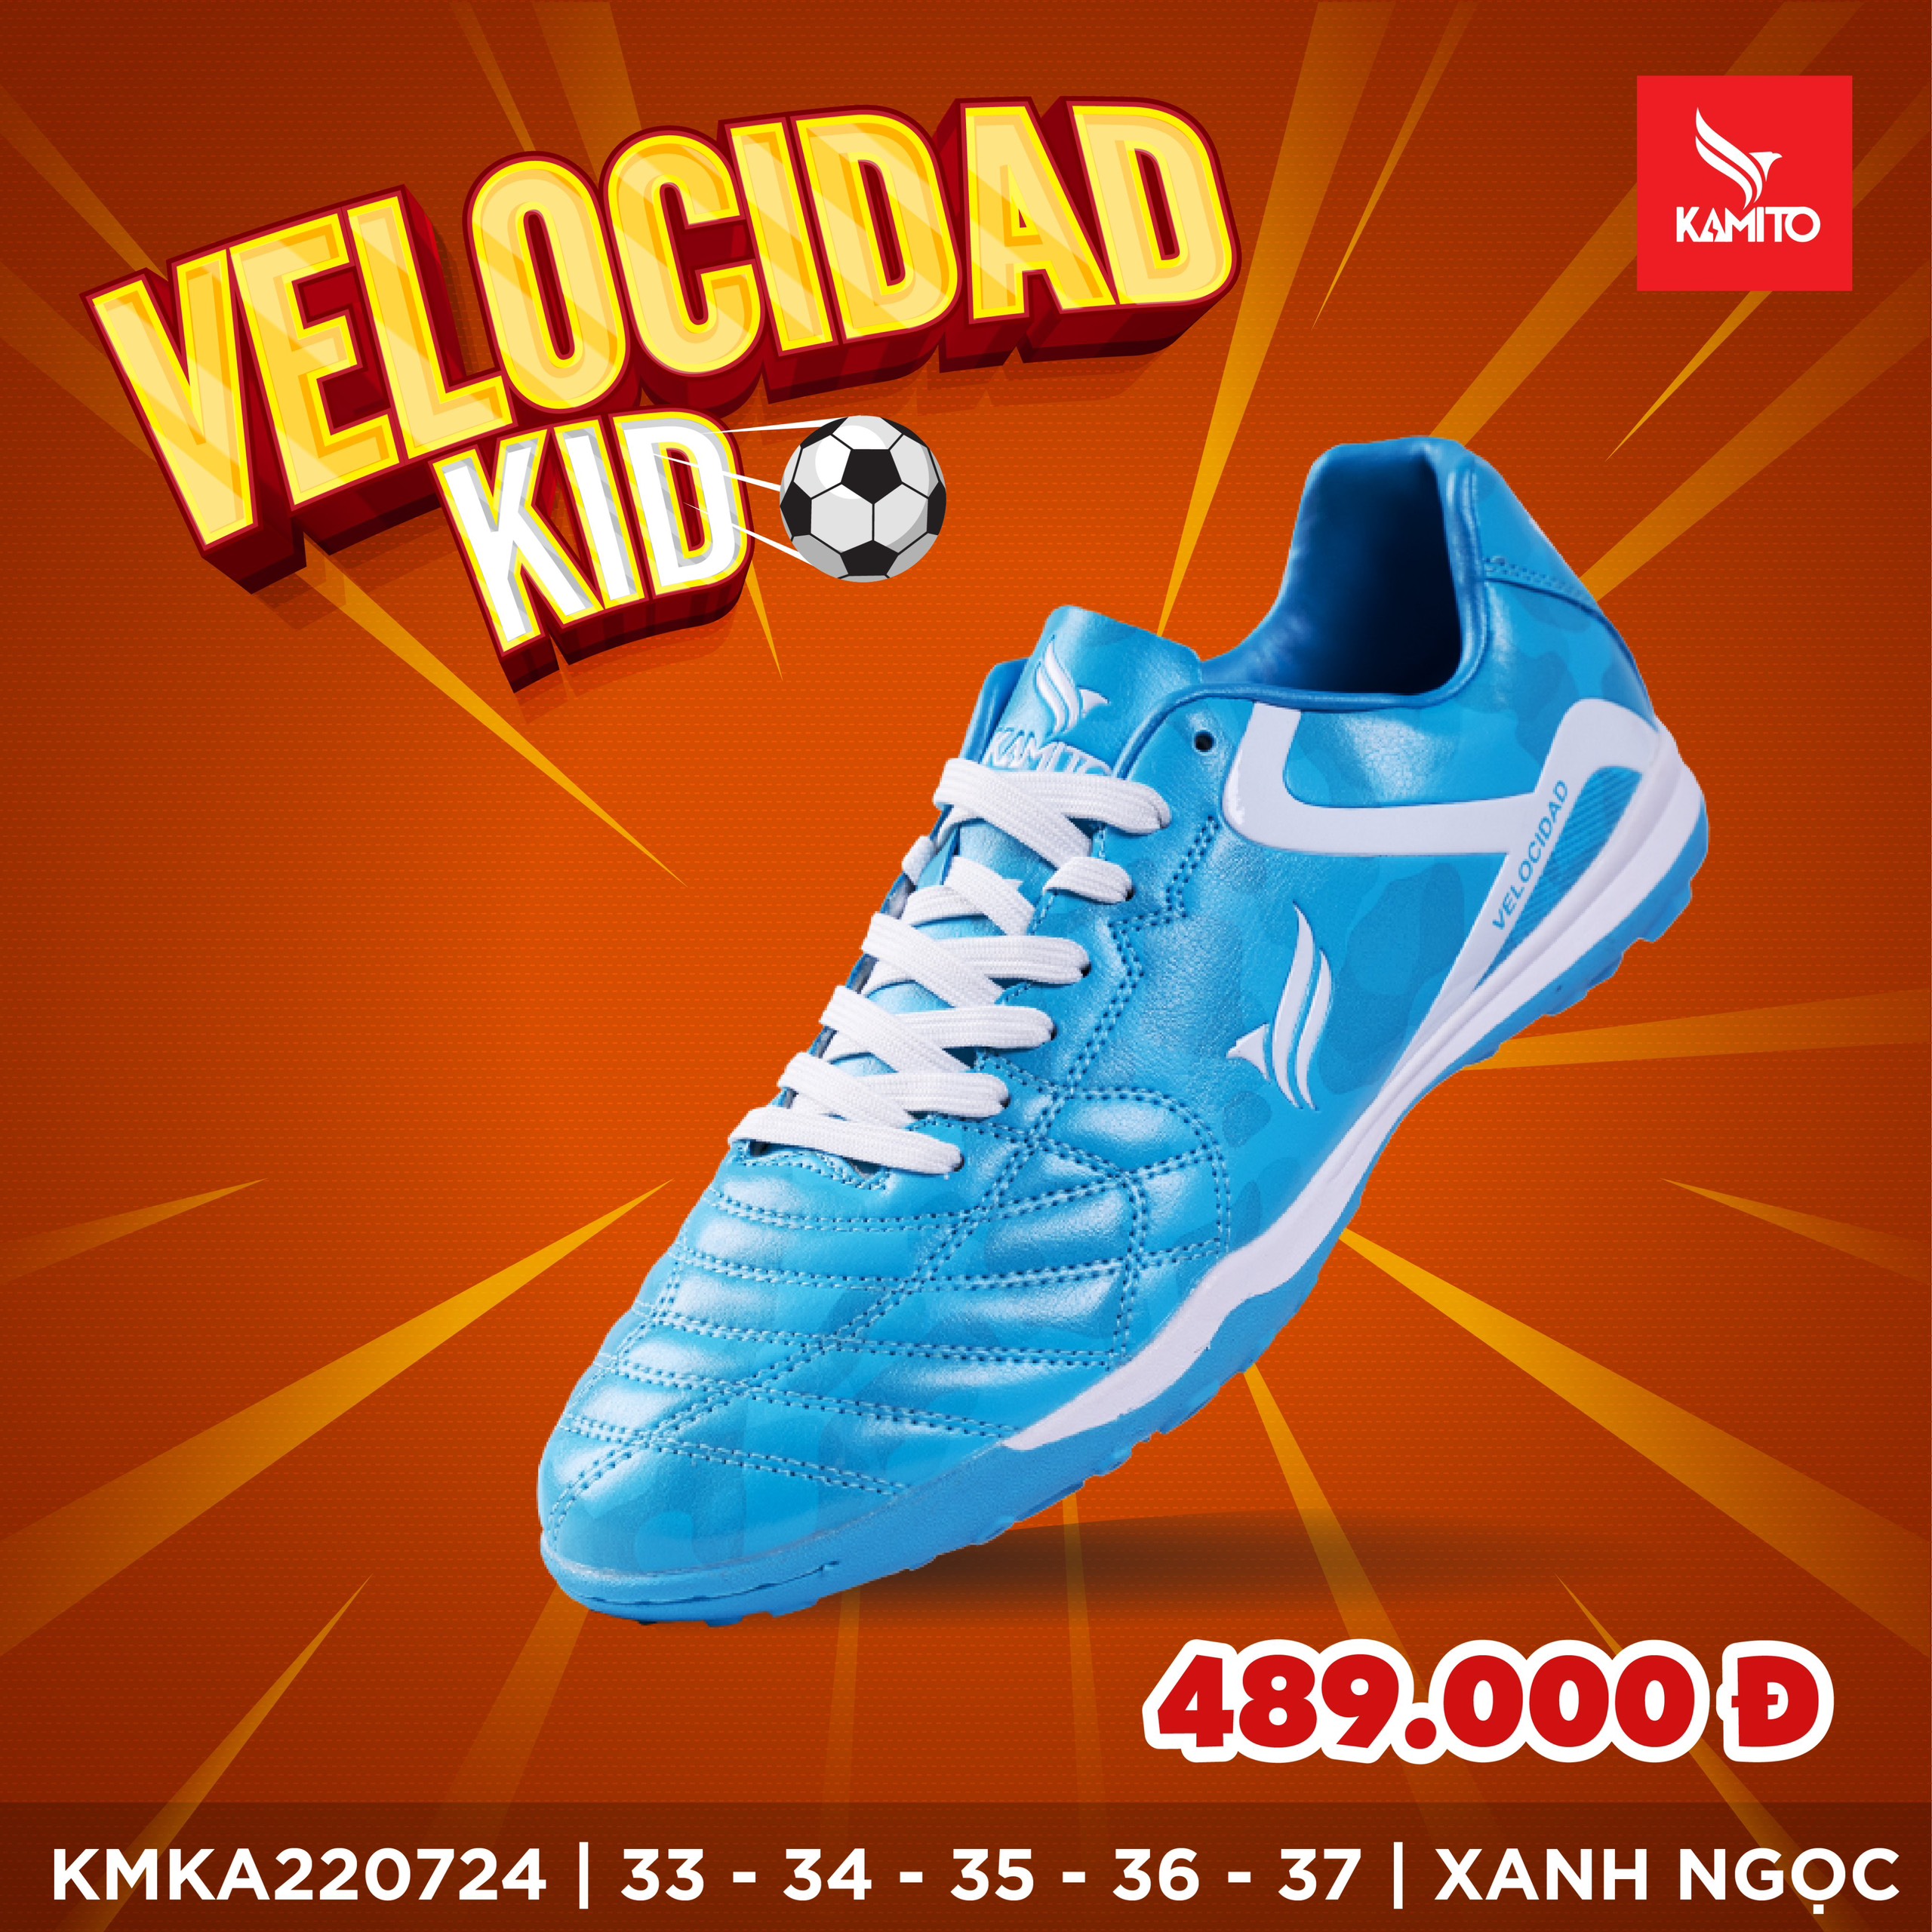 Giày Bóng đá trẻ em Kamito Velocidad Lengend-TF Kid Xanh